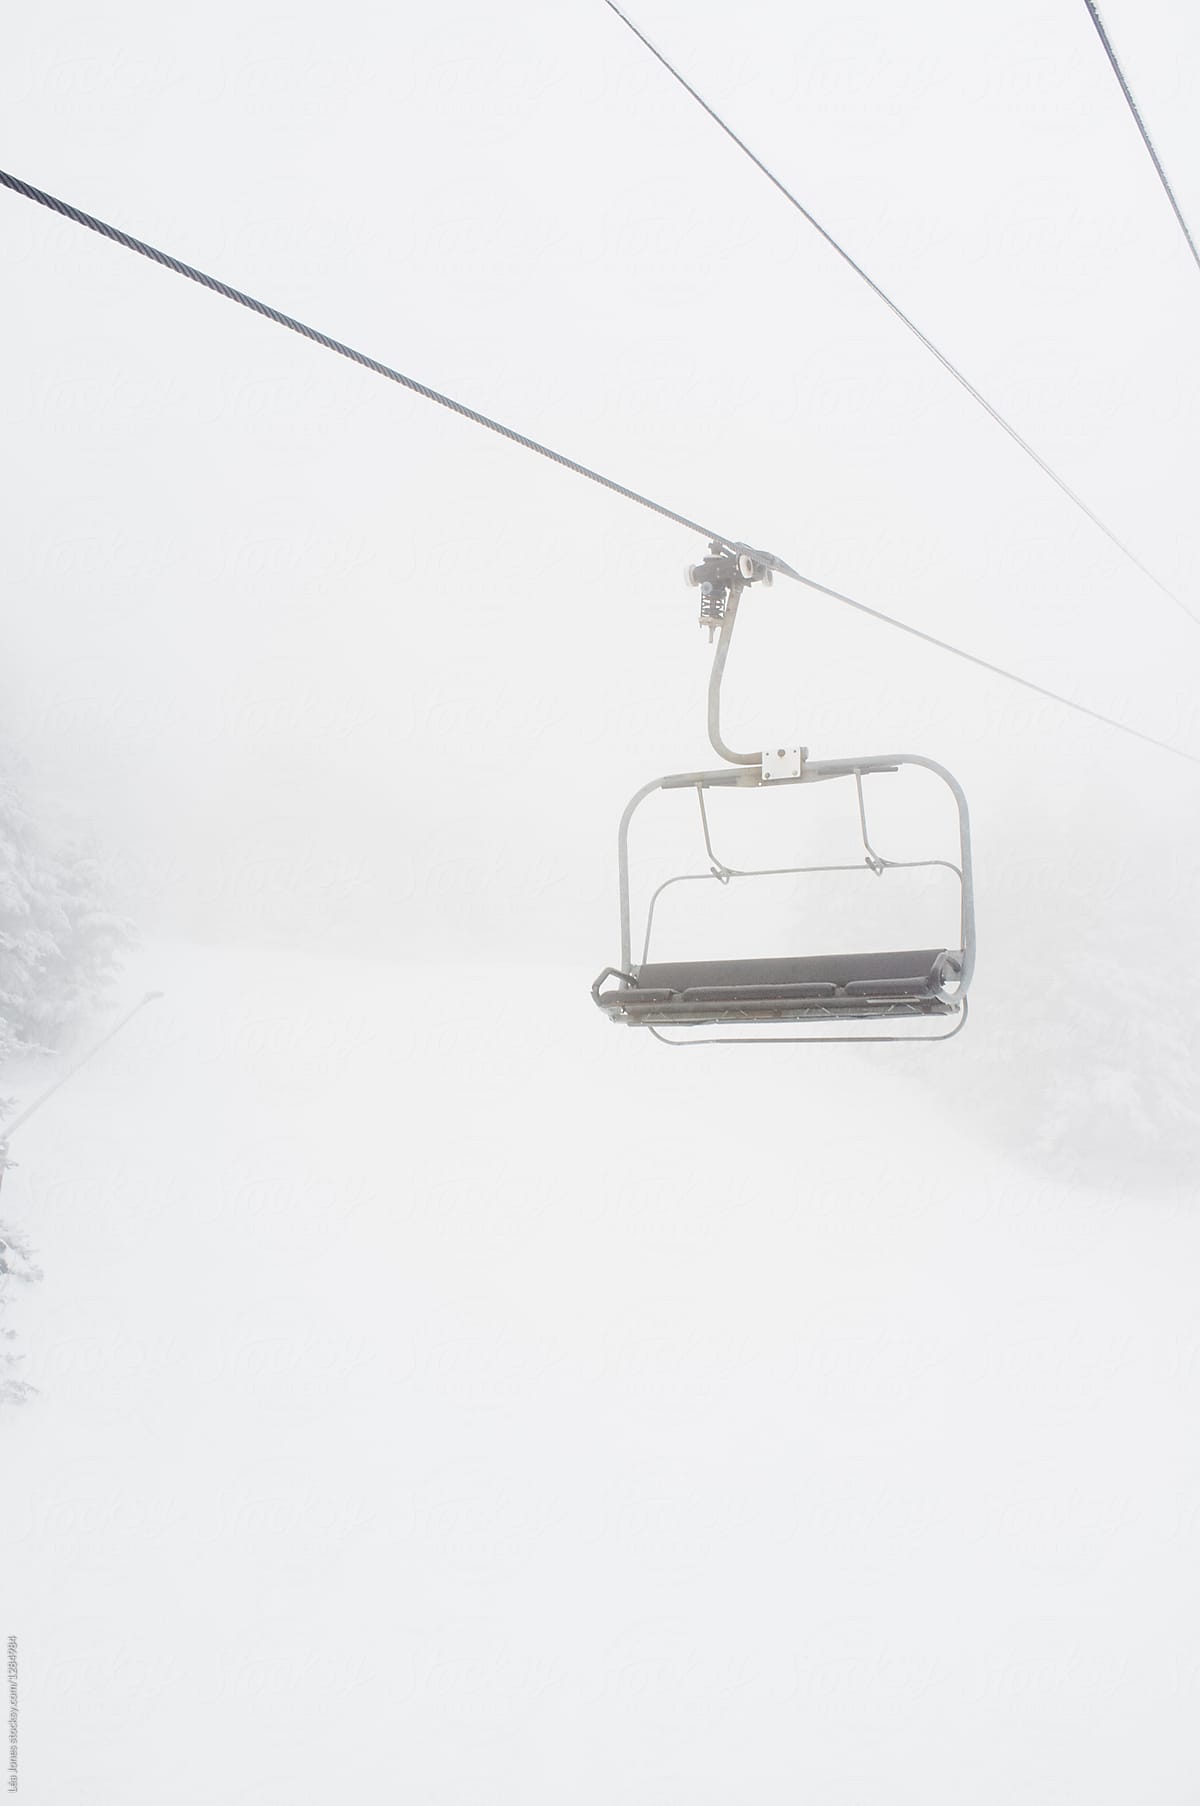 empty ski chairlift